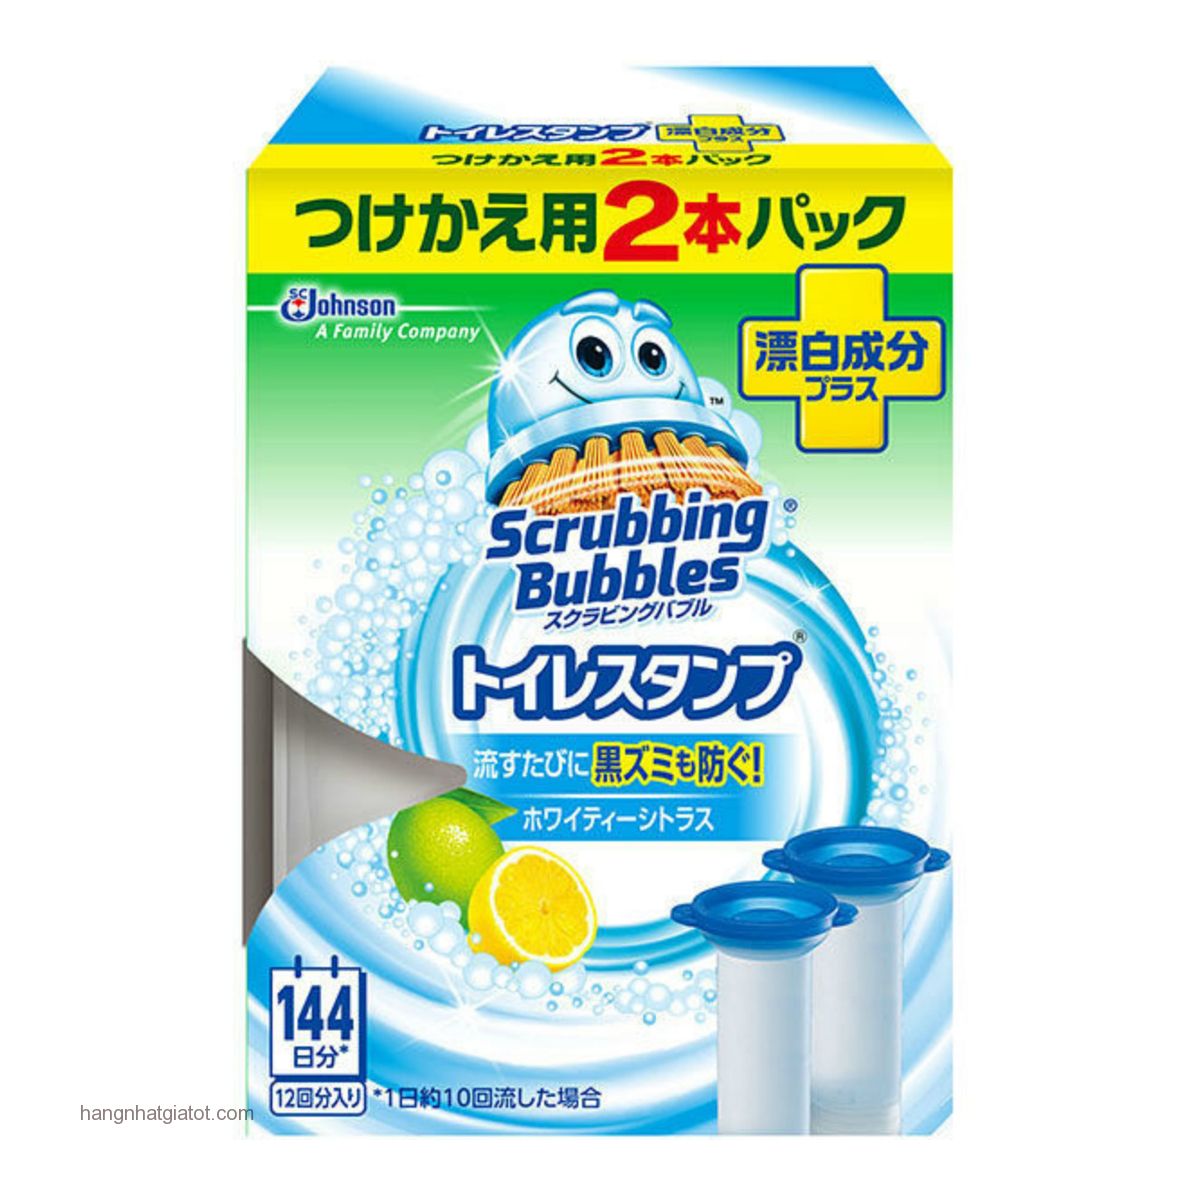 Viên gel thơm khử mùi bồn cầu Scrubbing Bubble 2 ống thay thế hương chanh ( NHẬT BẢN)